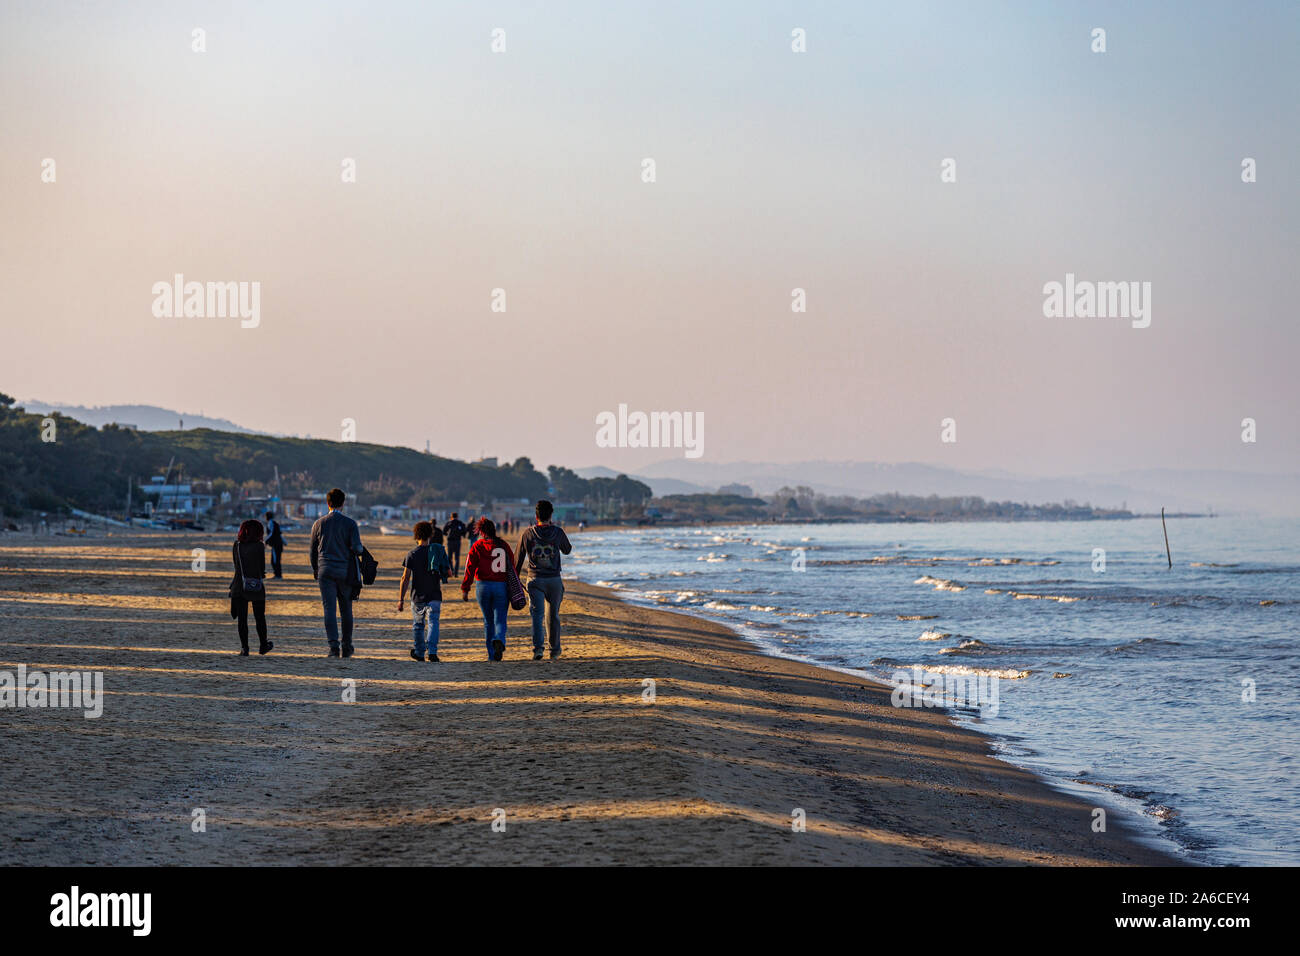 La marche sur la plage au coucher de soleil Banque D'Images